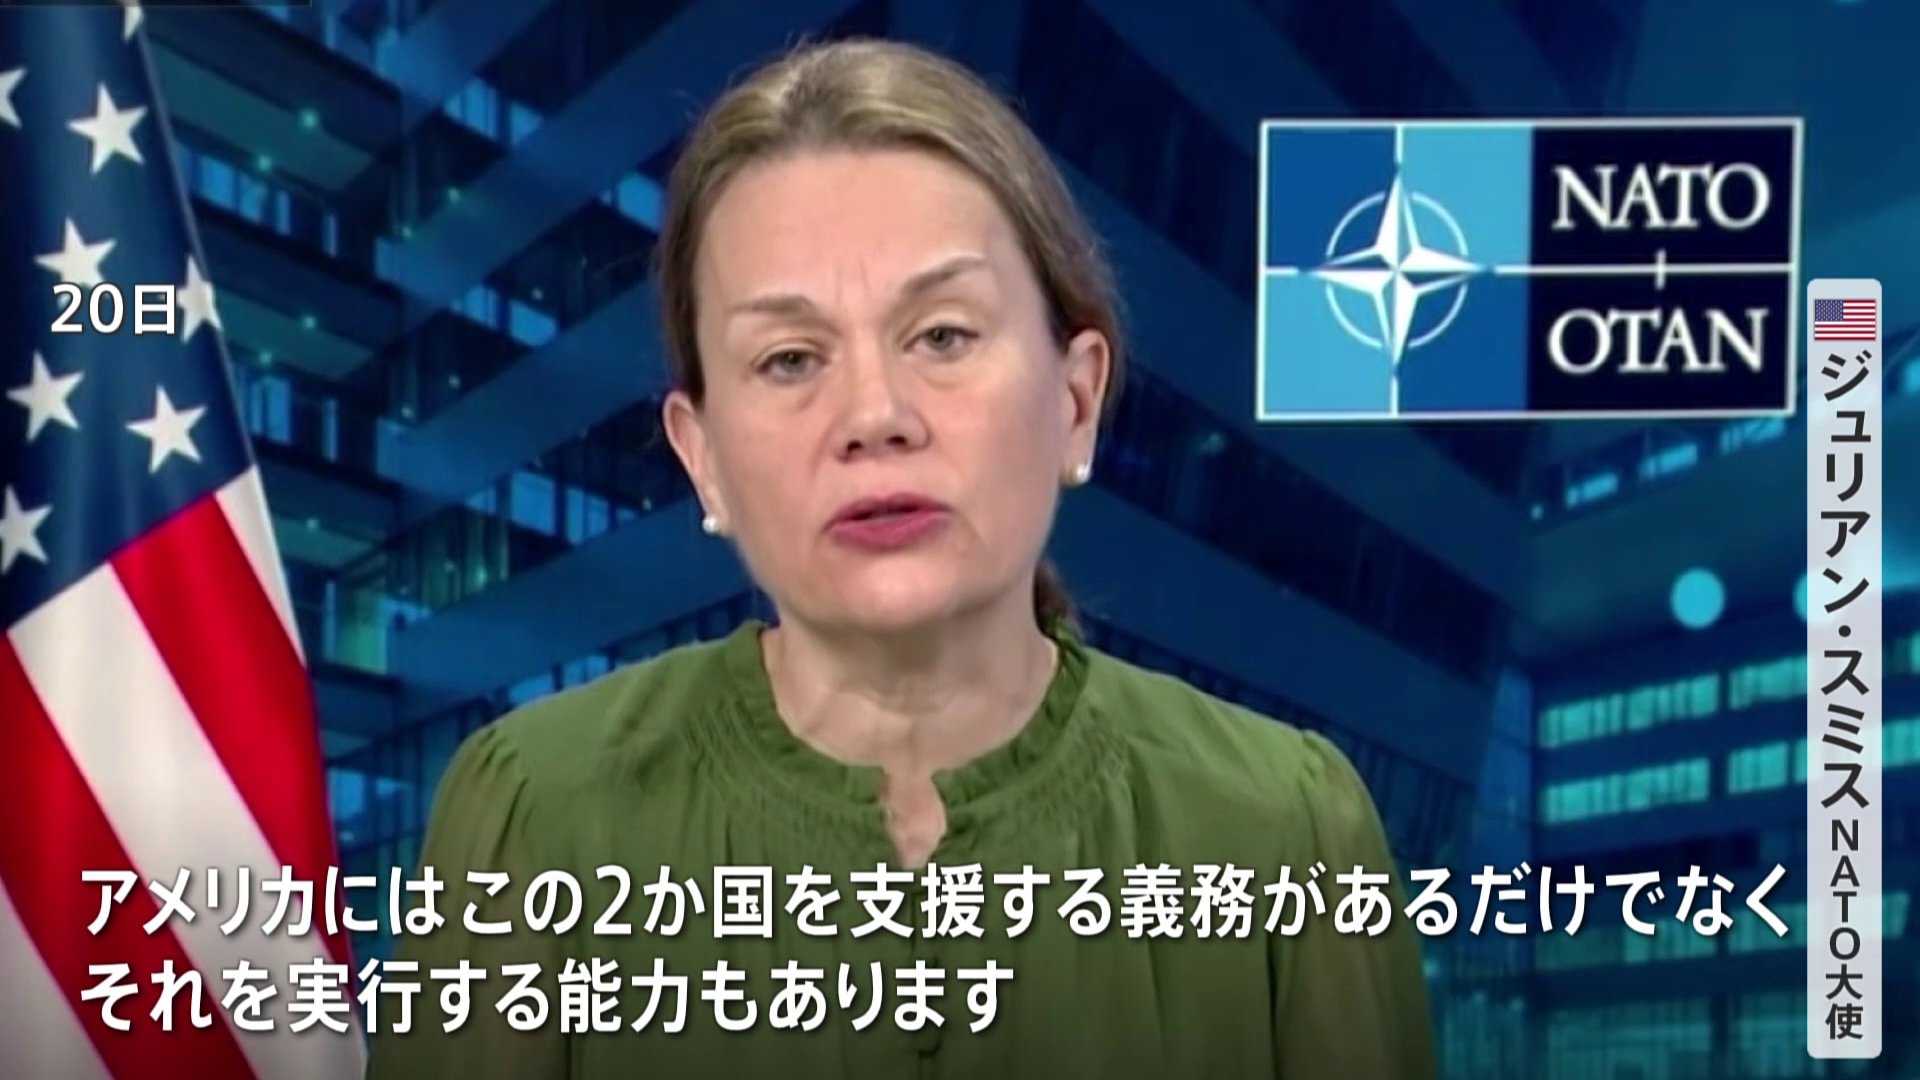 米NATO大使 単独インタビュー「2か国を支援する義務、実行能力もある」 ウクライナ、イスラエルに対し支援継続の意向